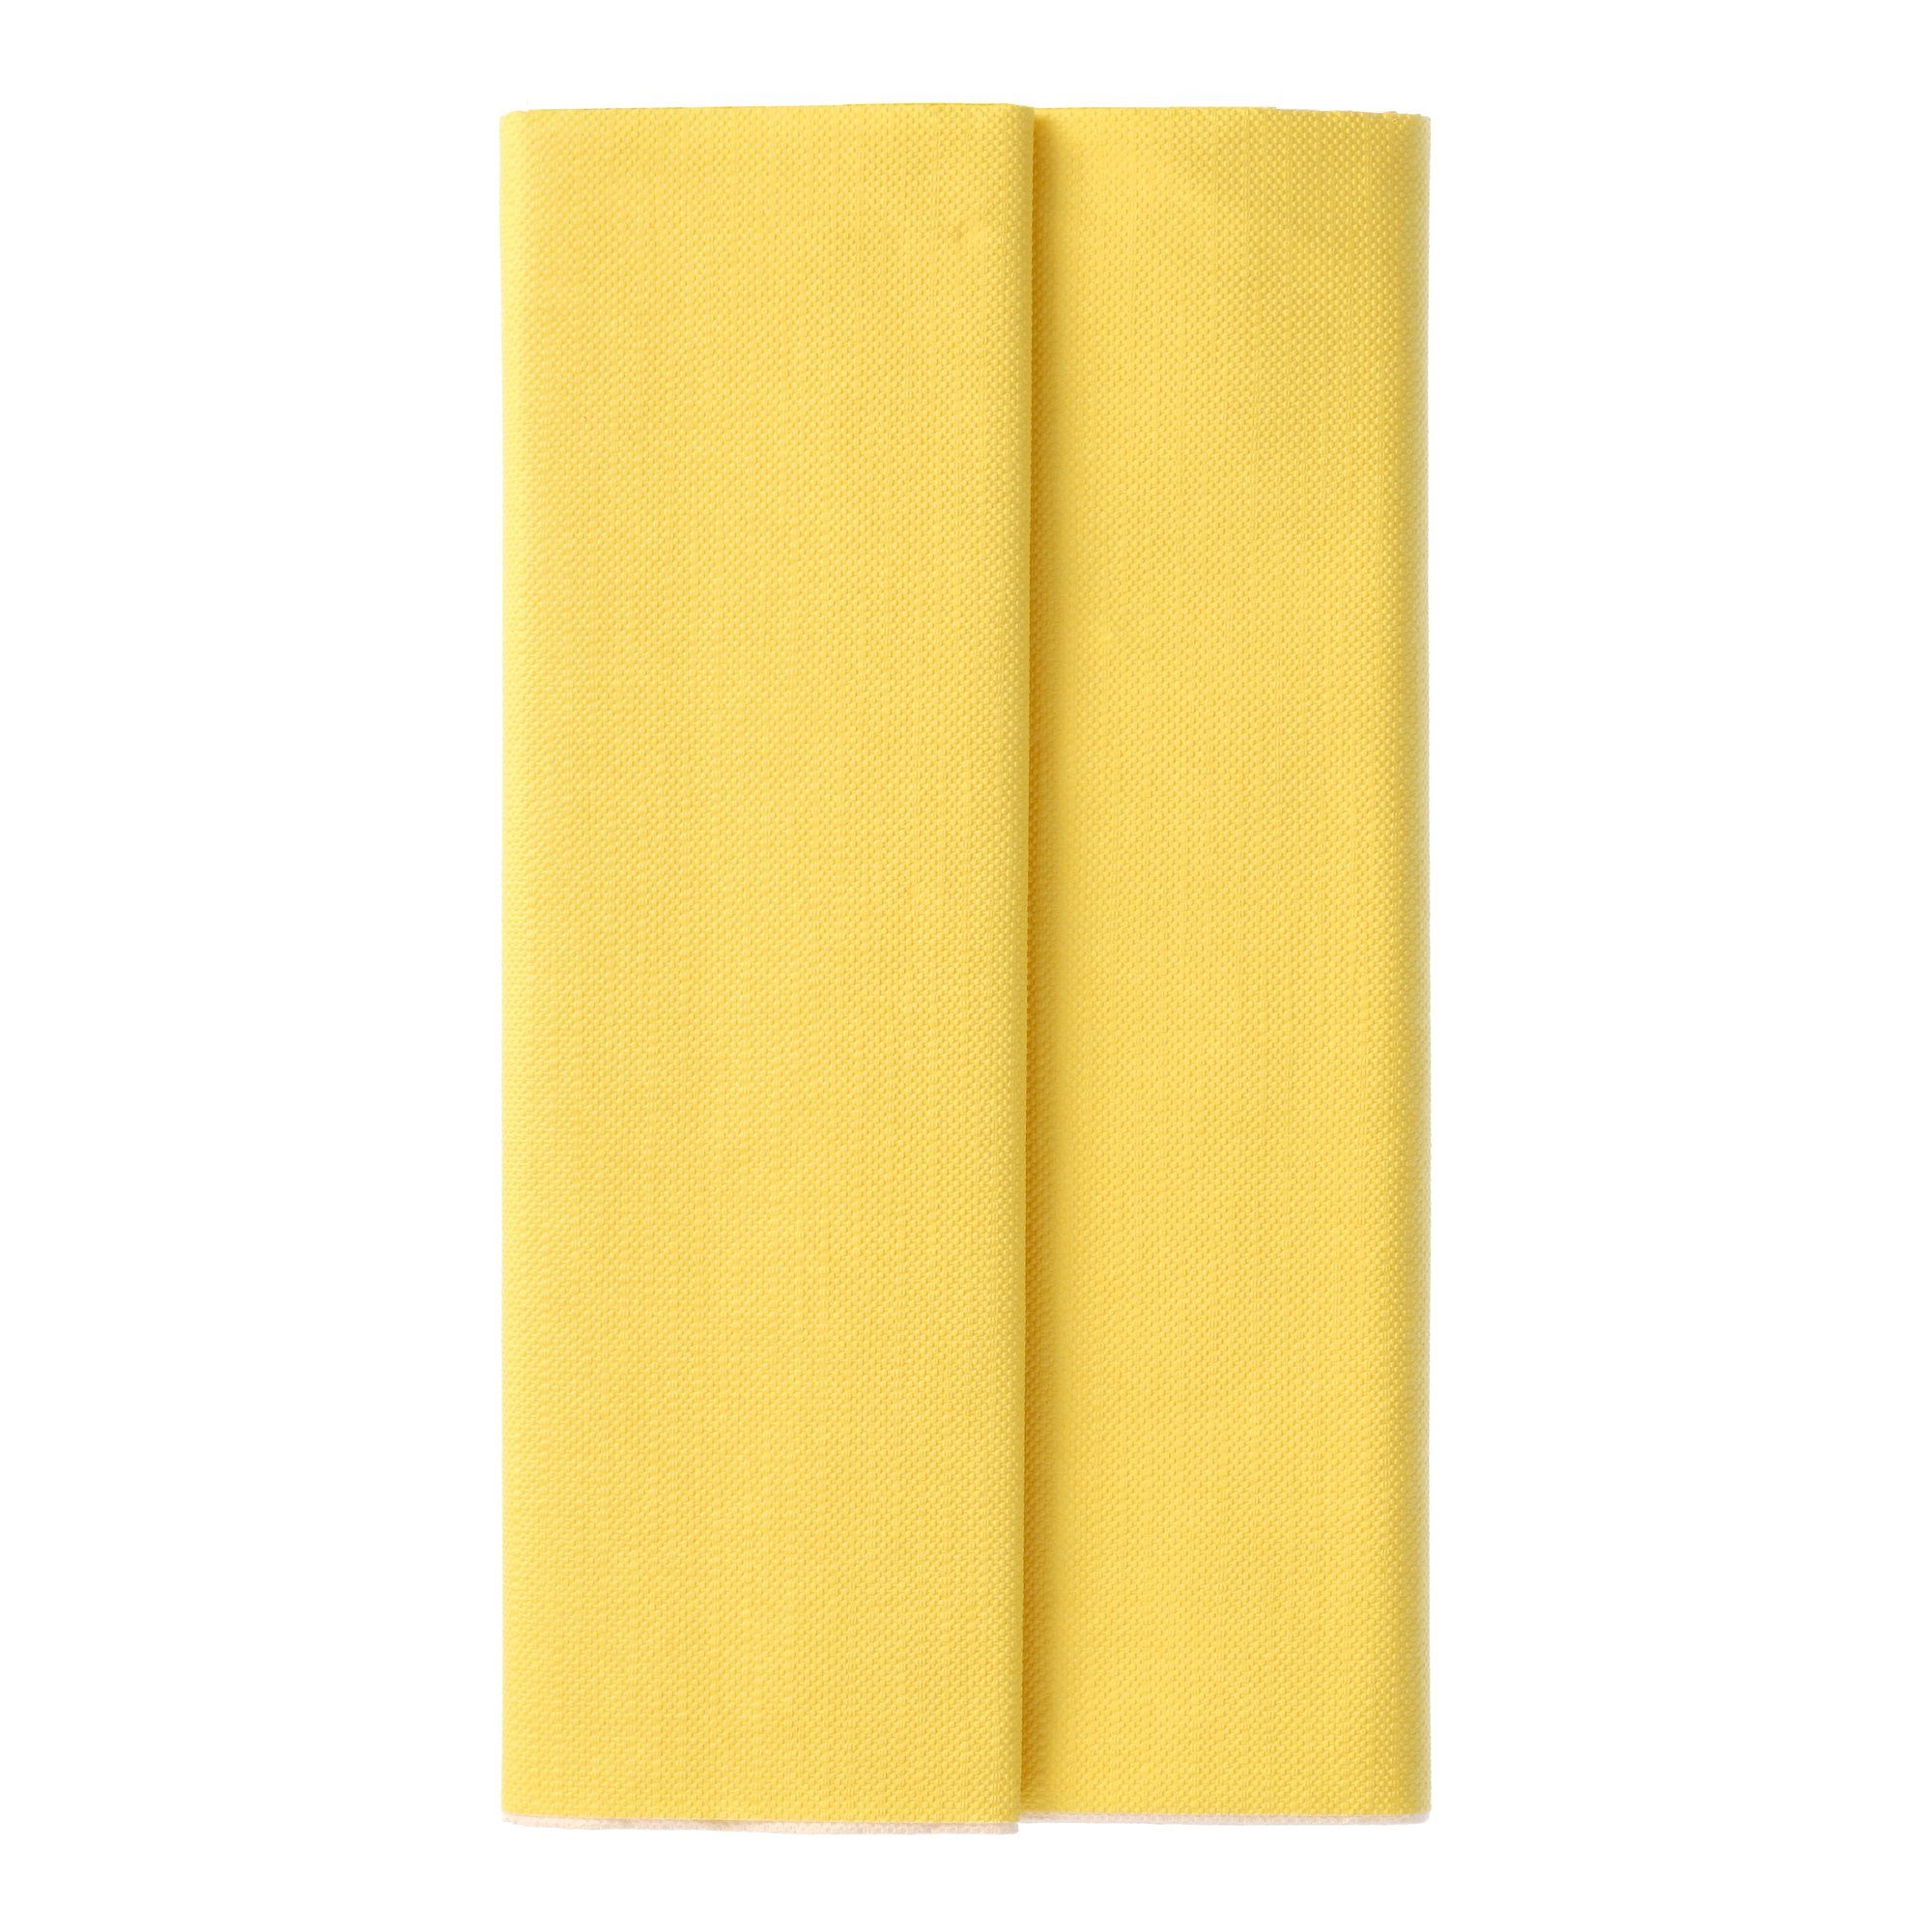 x Collection cm ROYAL PAPSTAR Tischläufer cm Tissue Tischdecke gelb 120 180